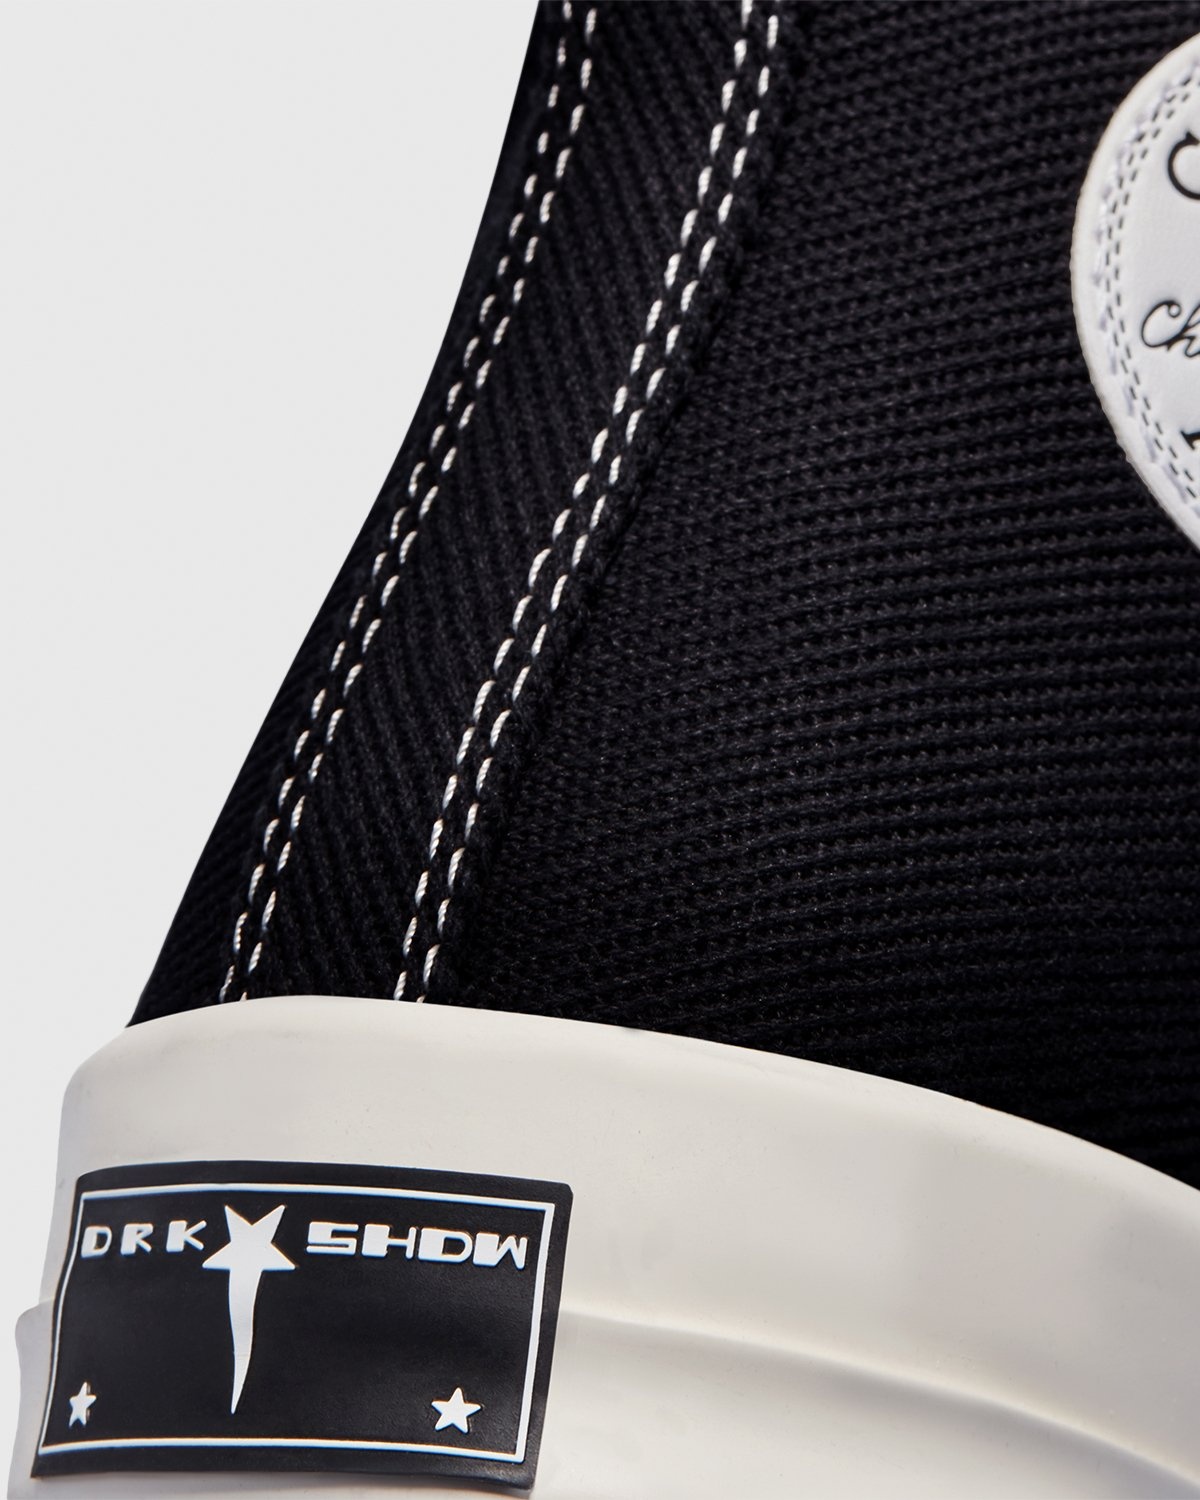 Converse – DRKSHDW TURBODRK Chuck 70 Black - Sneakers - Black - Image 5